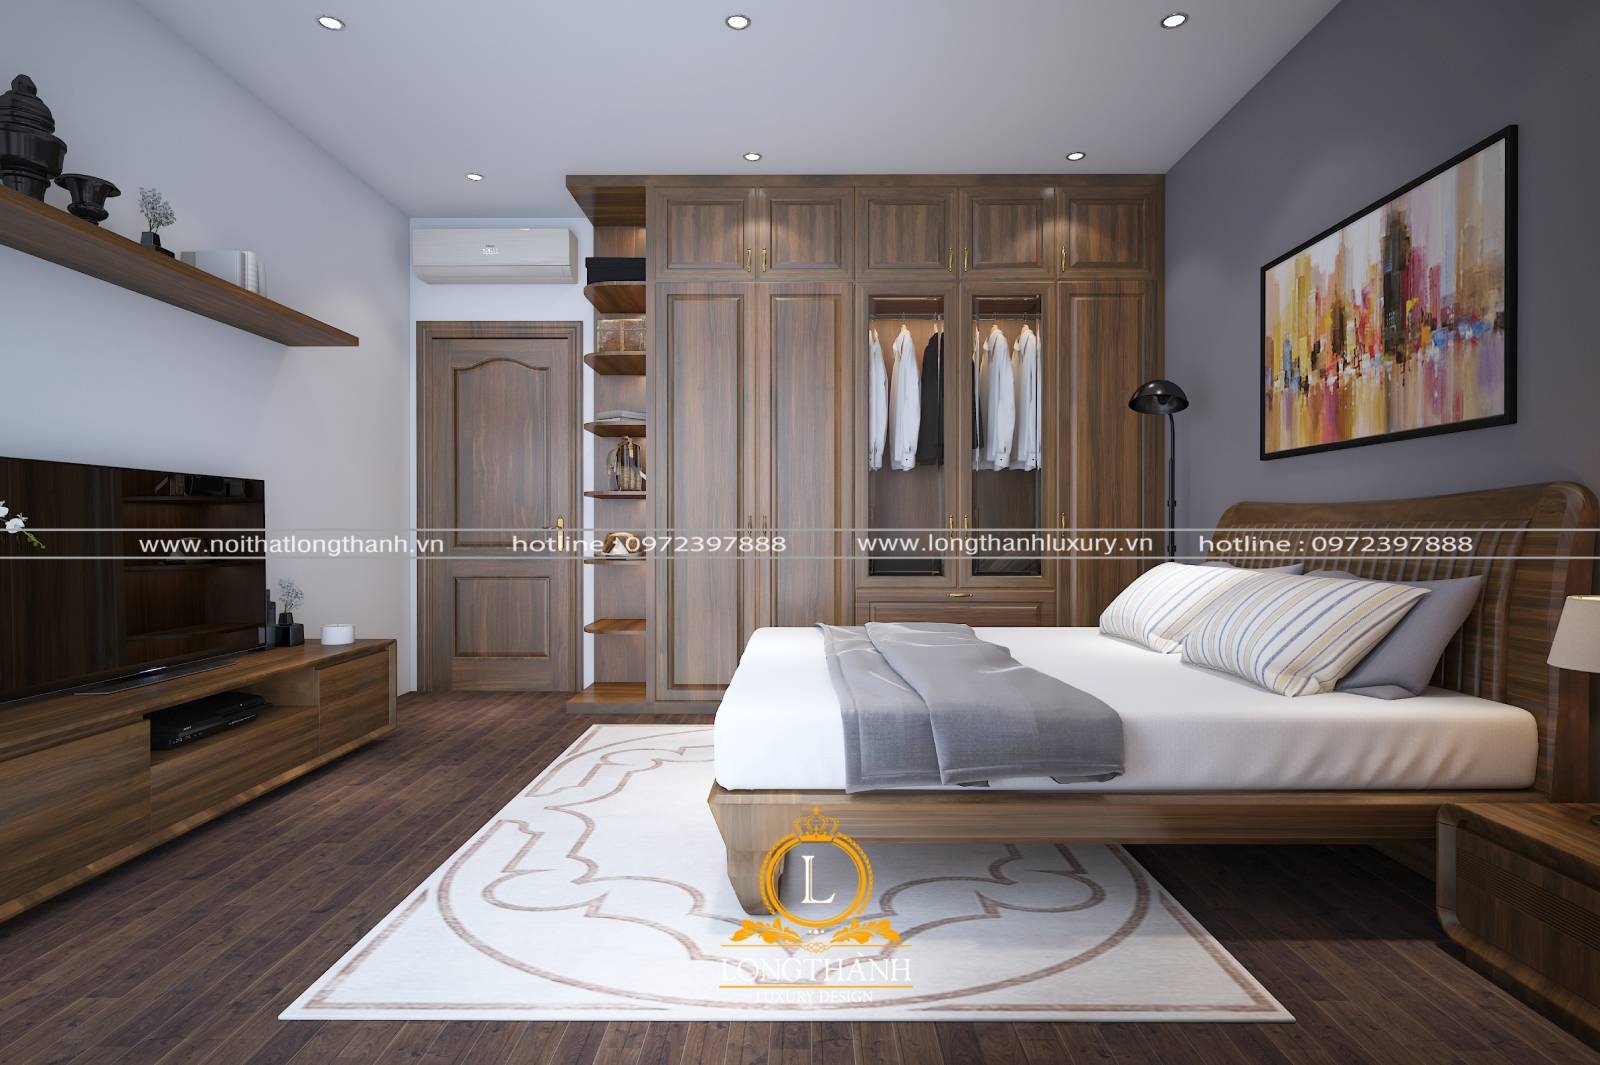 Không gian nội thất phòng ngủ được thiết kế đồng bộ tạo sự hài hòa và liên kết với nhau